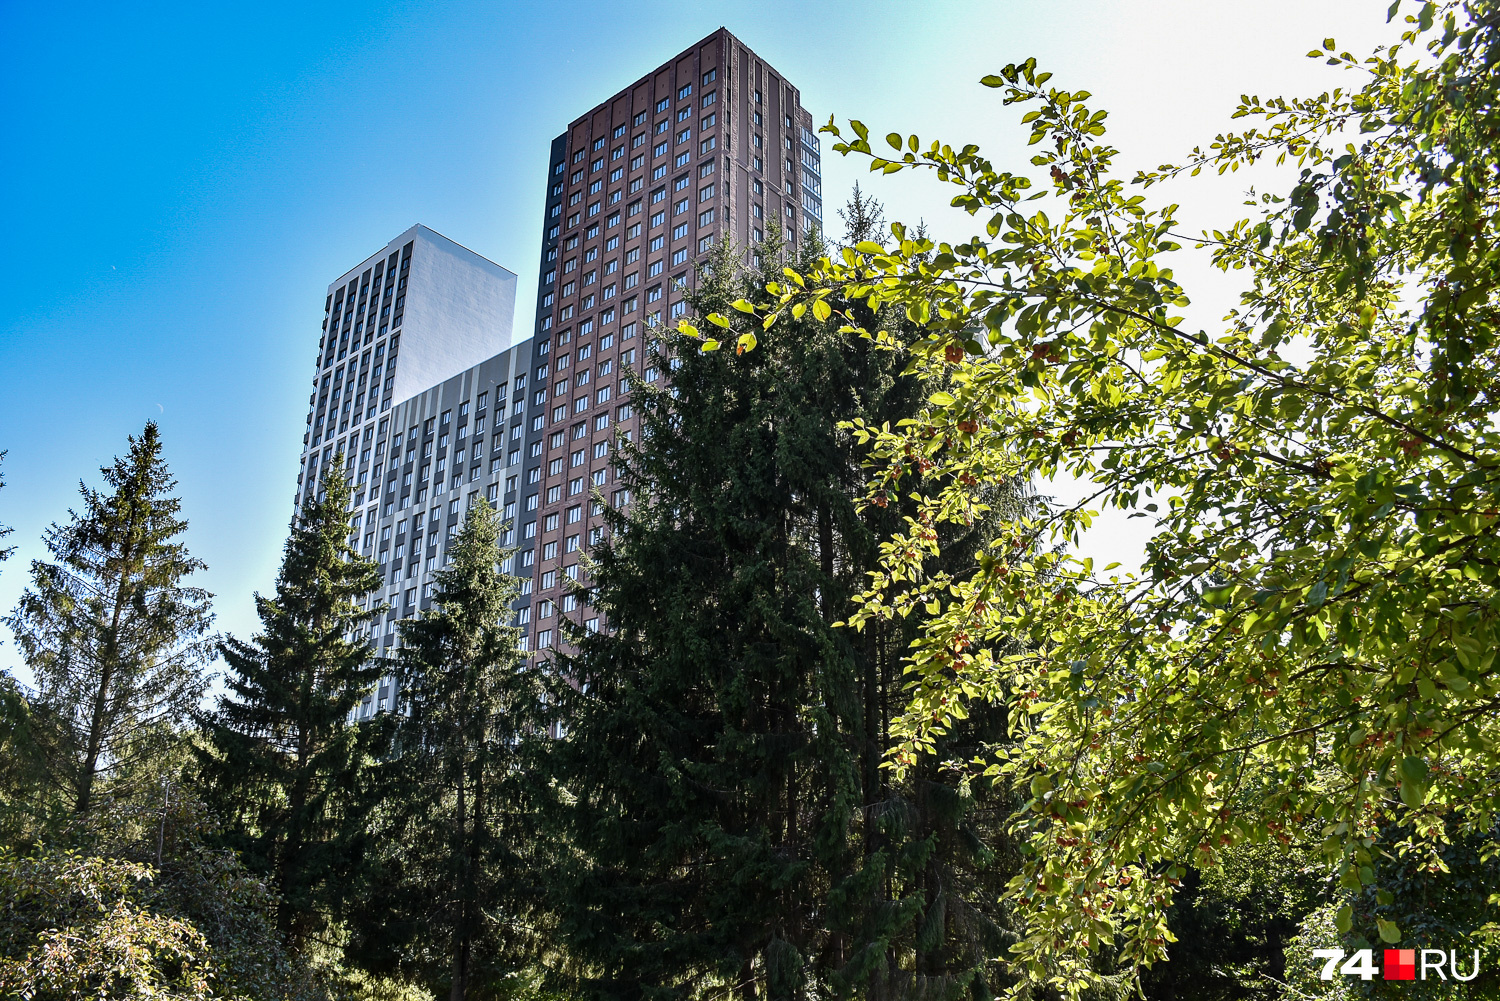 В Екатеринбурге есть несколько запущенный и пустоватый ботанический сад, вокруг которого вырос одноименный жилой комплекс. Виды местами напоминают центральный парк в Нью-Йорке